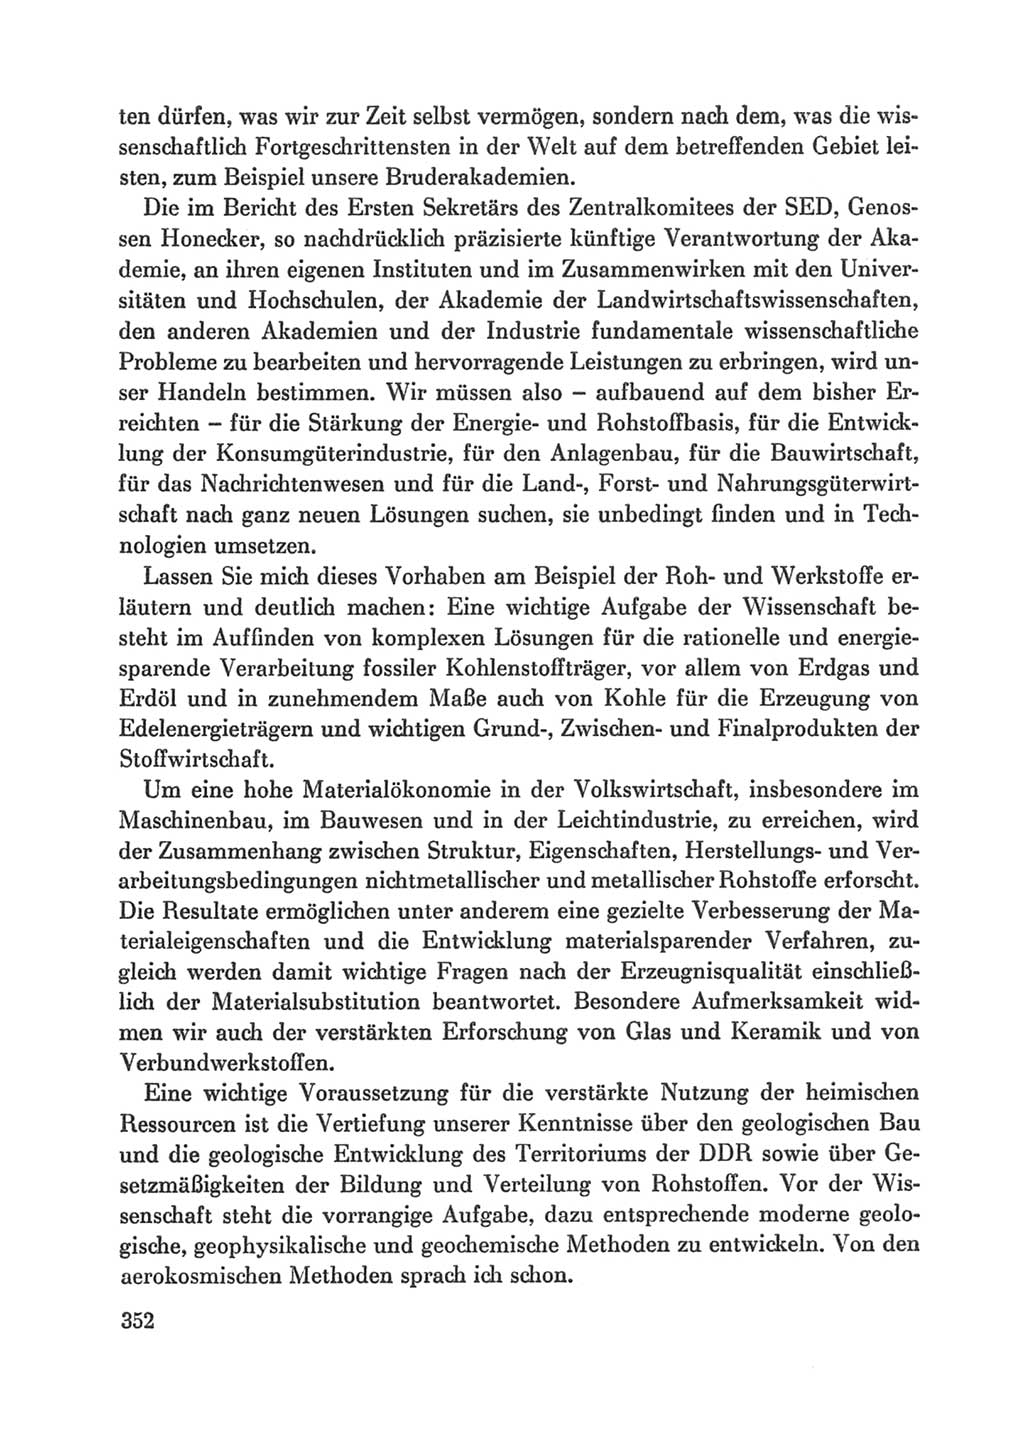 Protokoll der Verhandlungen des Ⅸ. Parteitages der Sozialistischen Einheitspartei Deutschlands (SED) [Deutsche Demokratische Republik (DDR)] 1976, Band 1, Seite 352 (Prot. Verh. Ⅸ. PT SED DDR 1976, Bd. 1, S. 352)